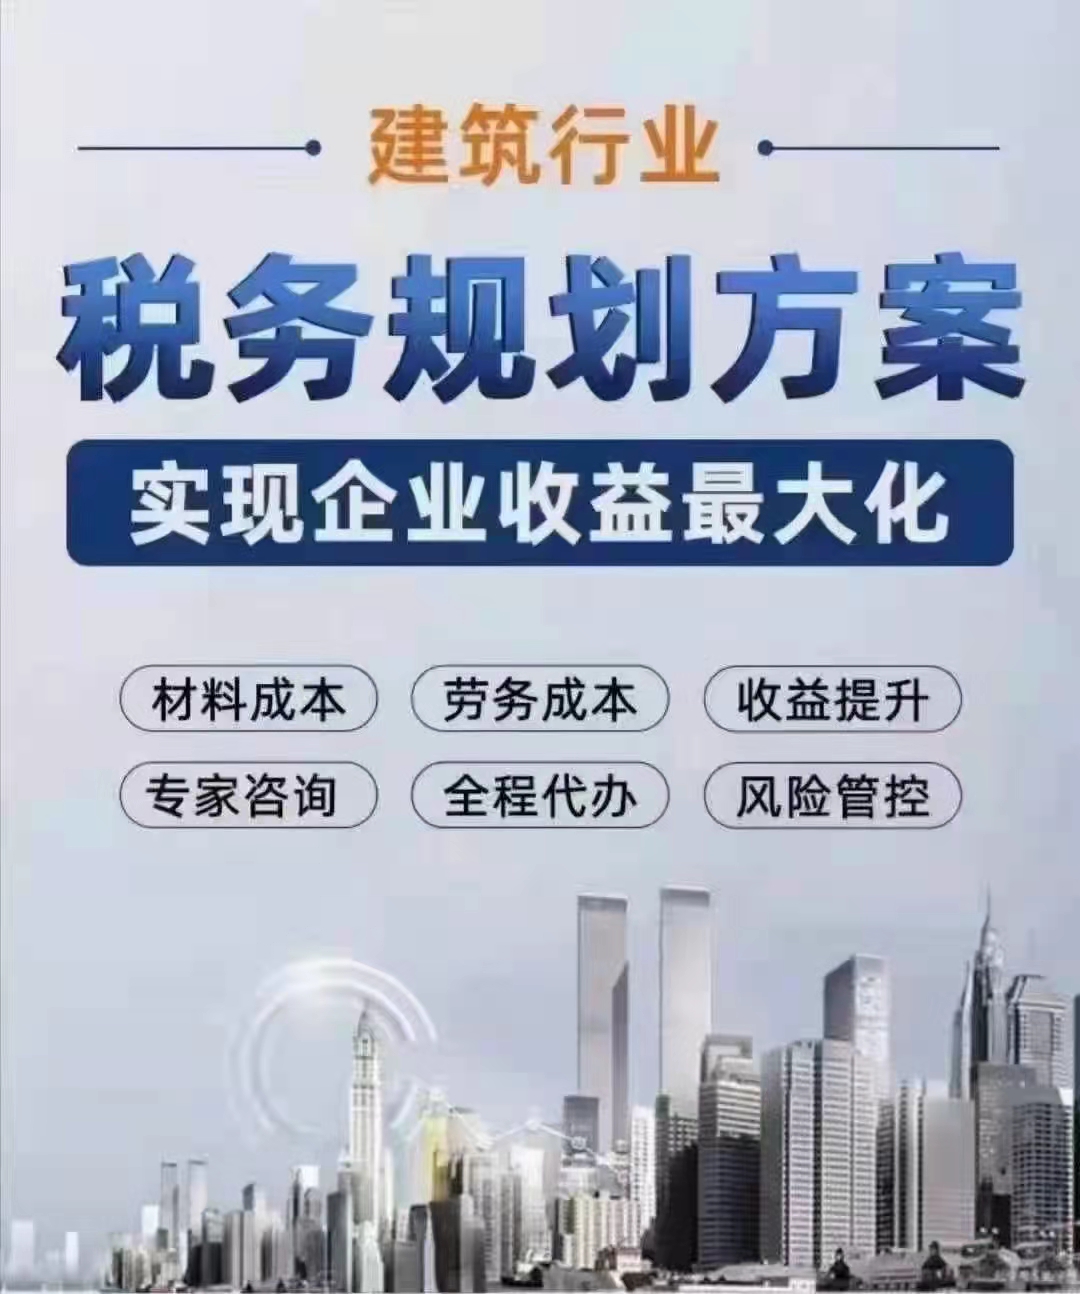 郑州建筑公司合规节省成本费用三大建议